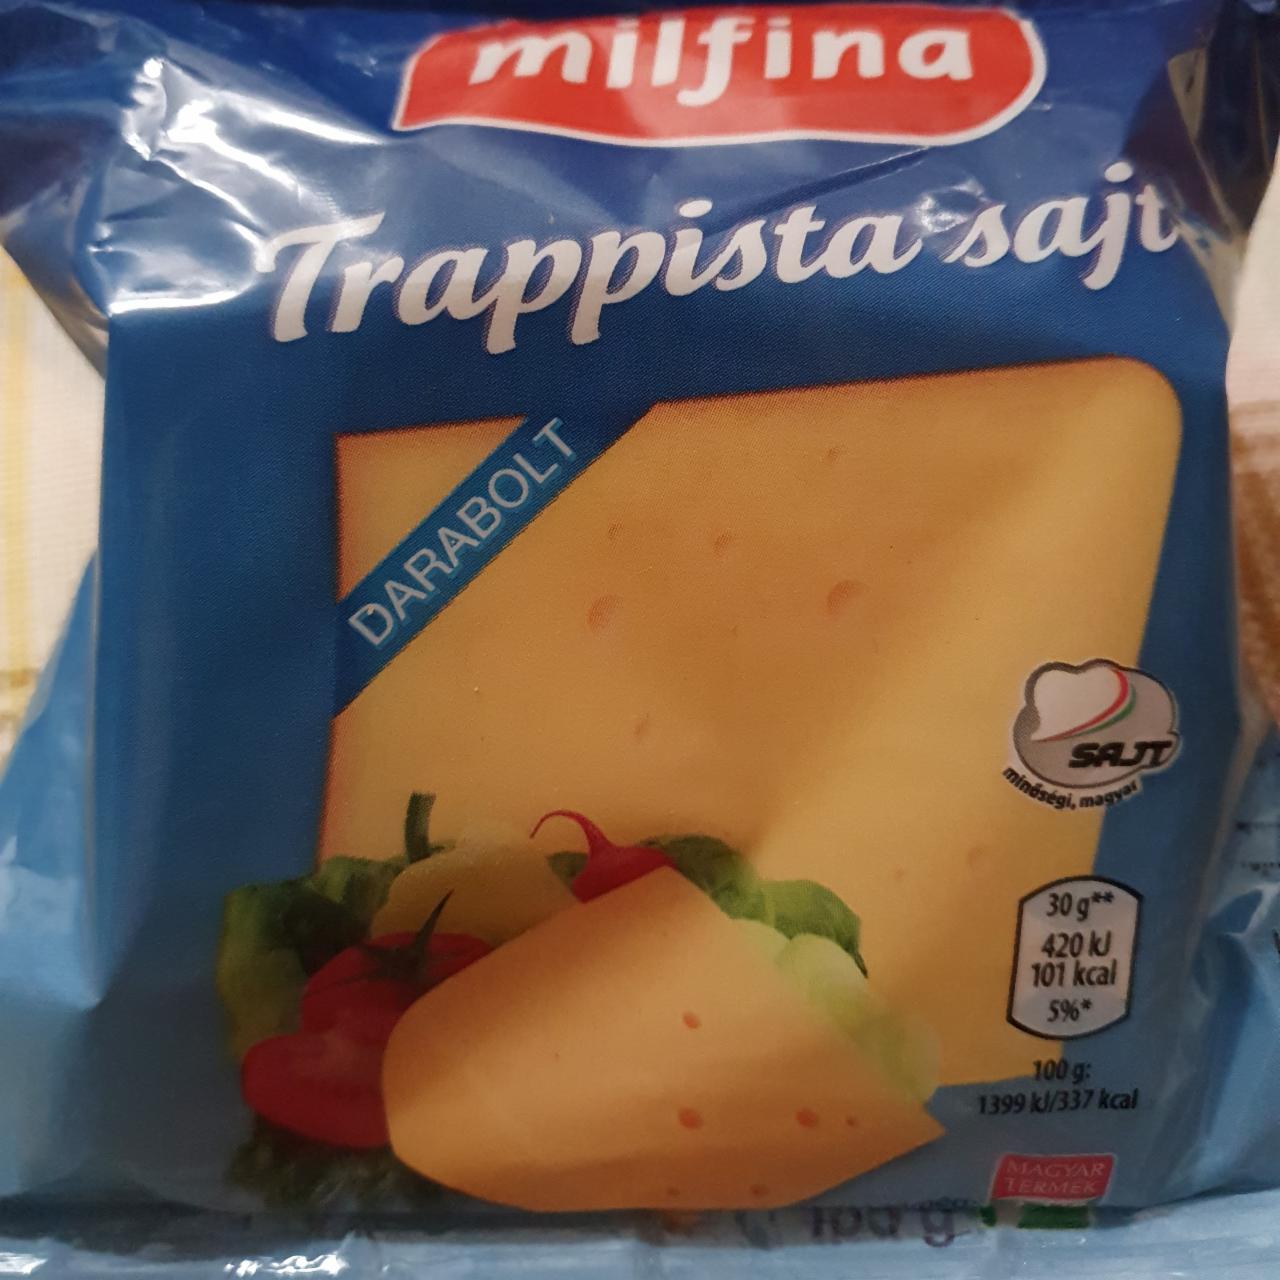 Képek - Trappista sajt darabolt Milfina